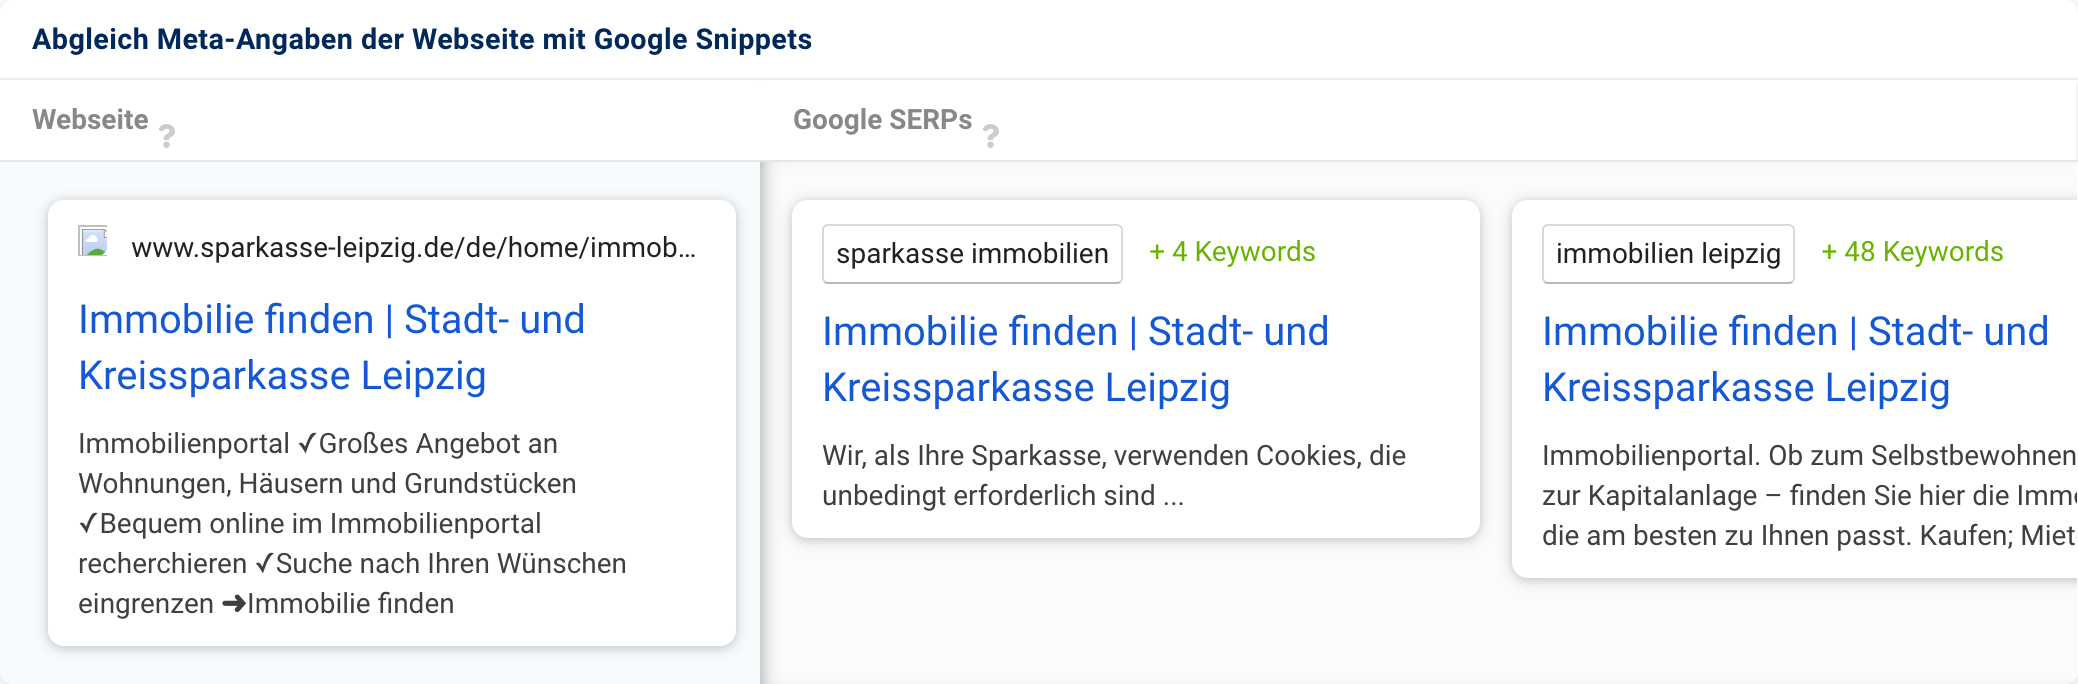 Statt einer gut strukturierten Meta-Description zeigt Google für das Snippet der Domain sparkasse-leipzig.de den Text aus dem Cookie-Banner an.